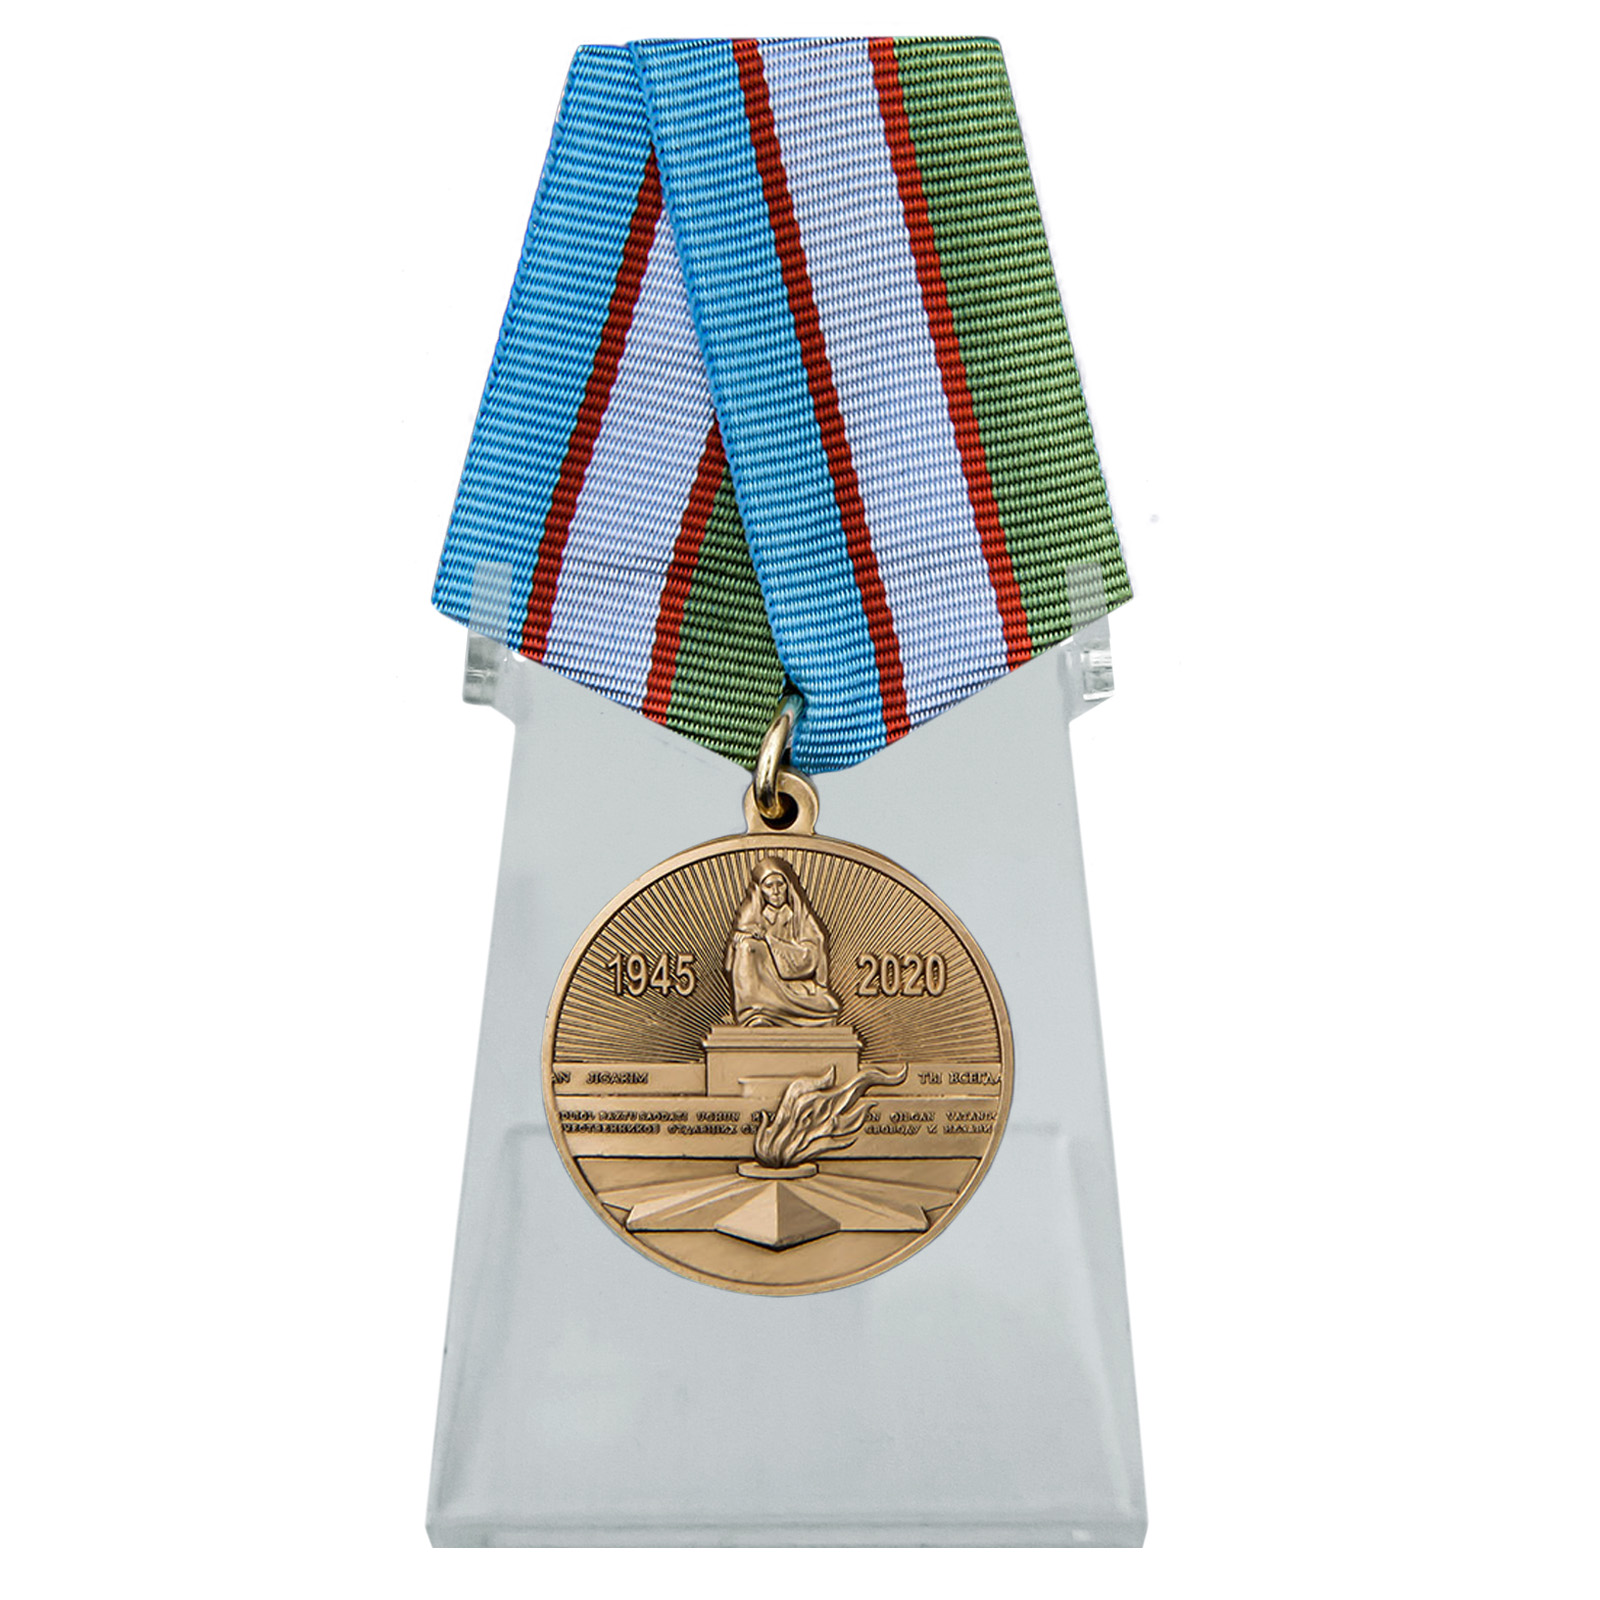 Купить медаль Узбекистана День Победы во Второй мировой войне на подставке в подарок